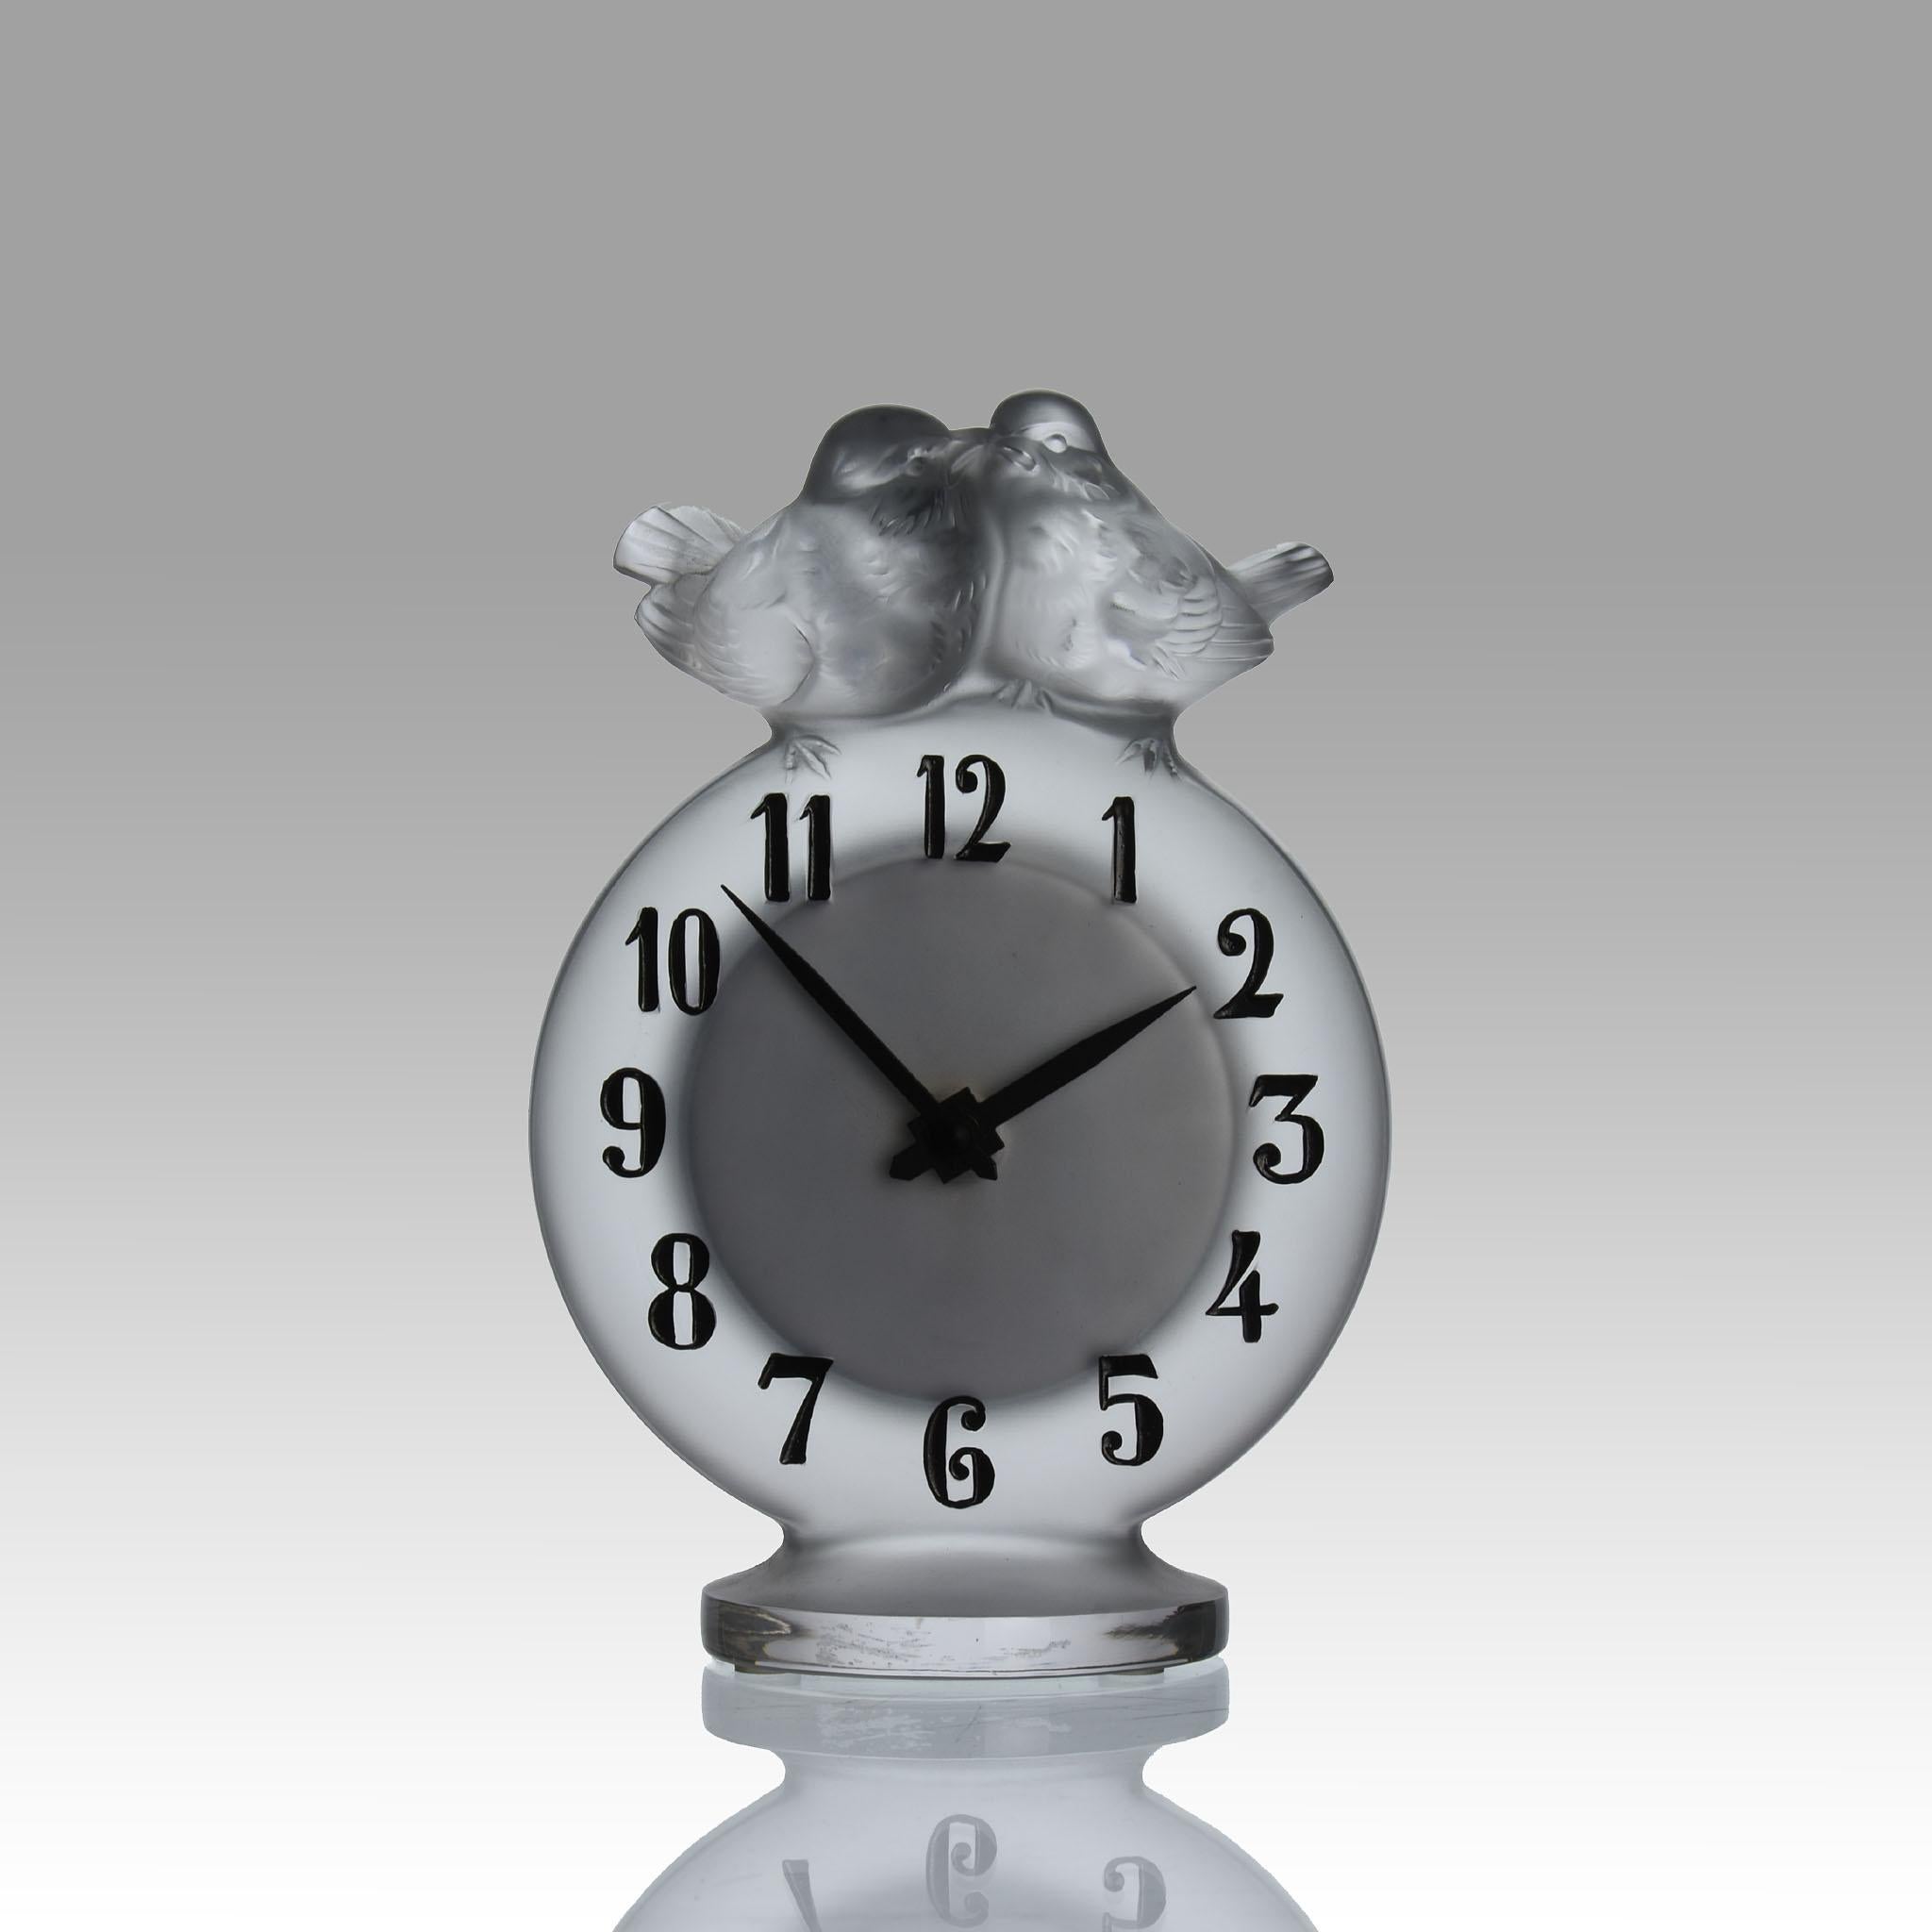 Ravissante horloge française en verre dépoli surmontée de deux tourtereaux perchés, le cadran avec des chiffres en émail noir, signée Lalique France.

INFORMATIONS COMPLÉMENTAIRES
Hauteur :                                       15 cm
Largeur :      